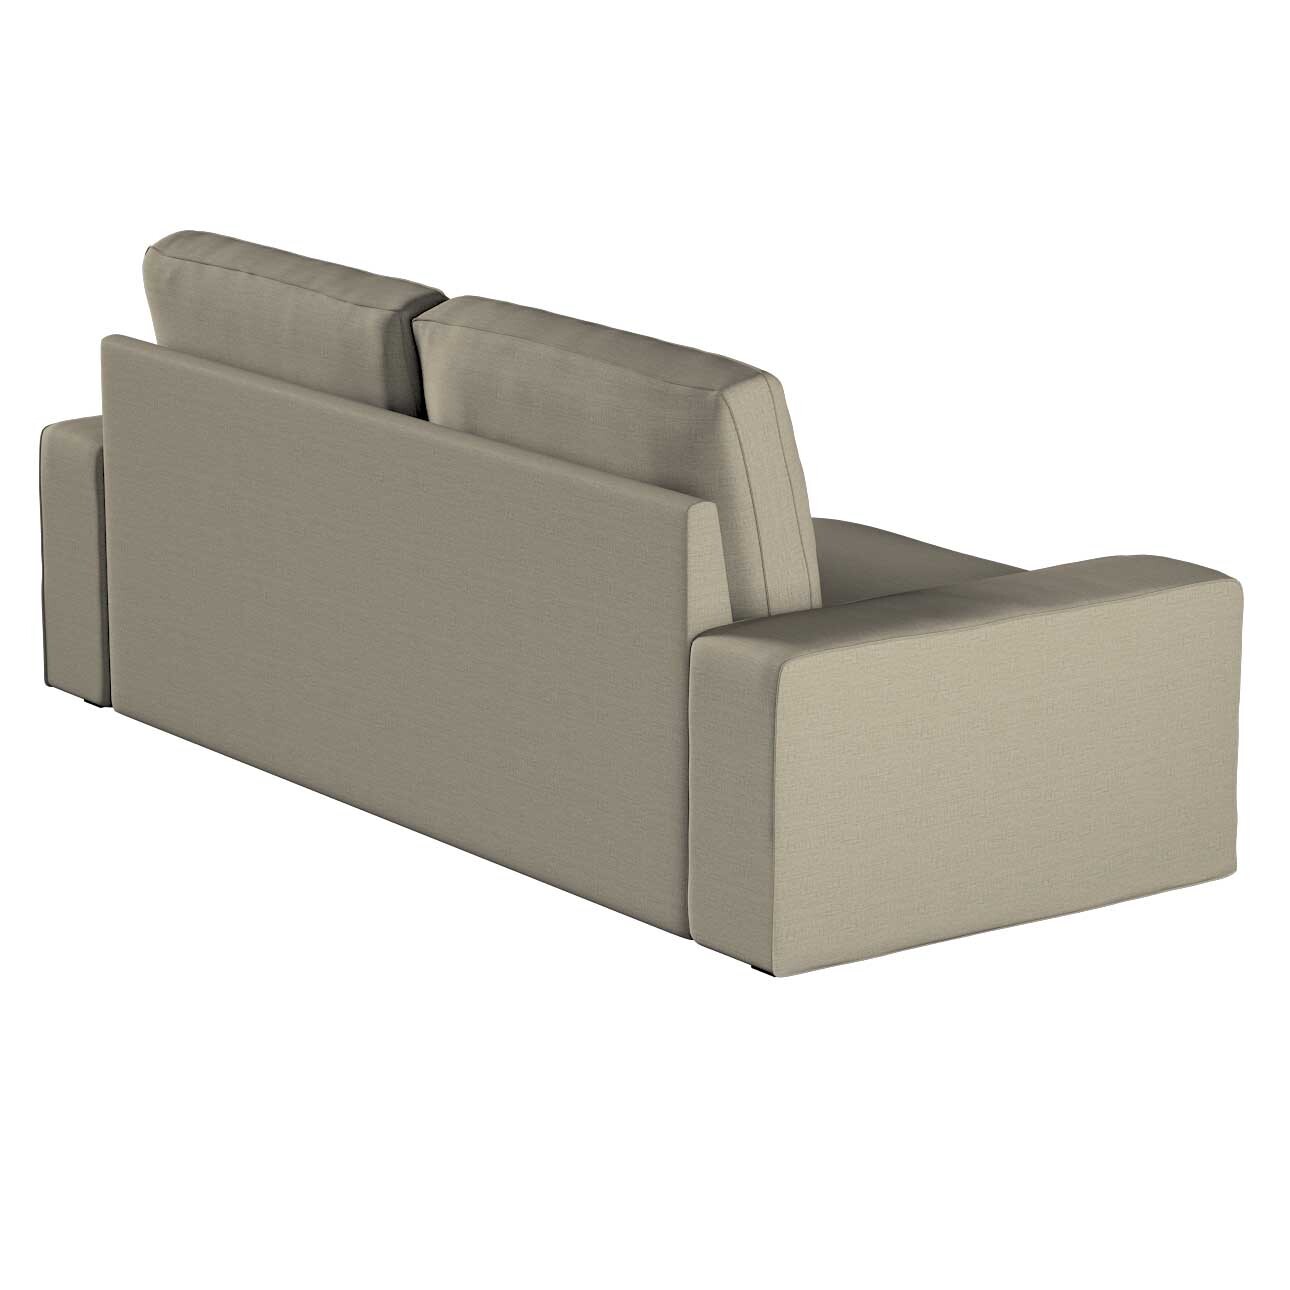 Bezug für Kivik 3-Sitzer Sofa, grau-braun, Bezug für Sofa Kivik 3-Sitzer, L günstig online kaufen